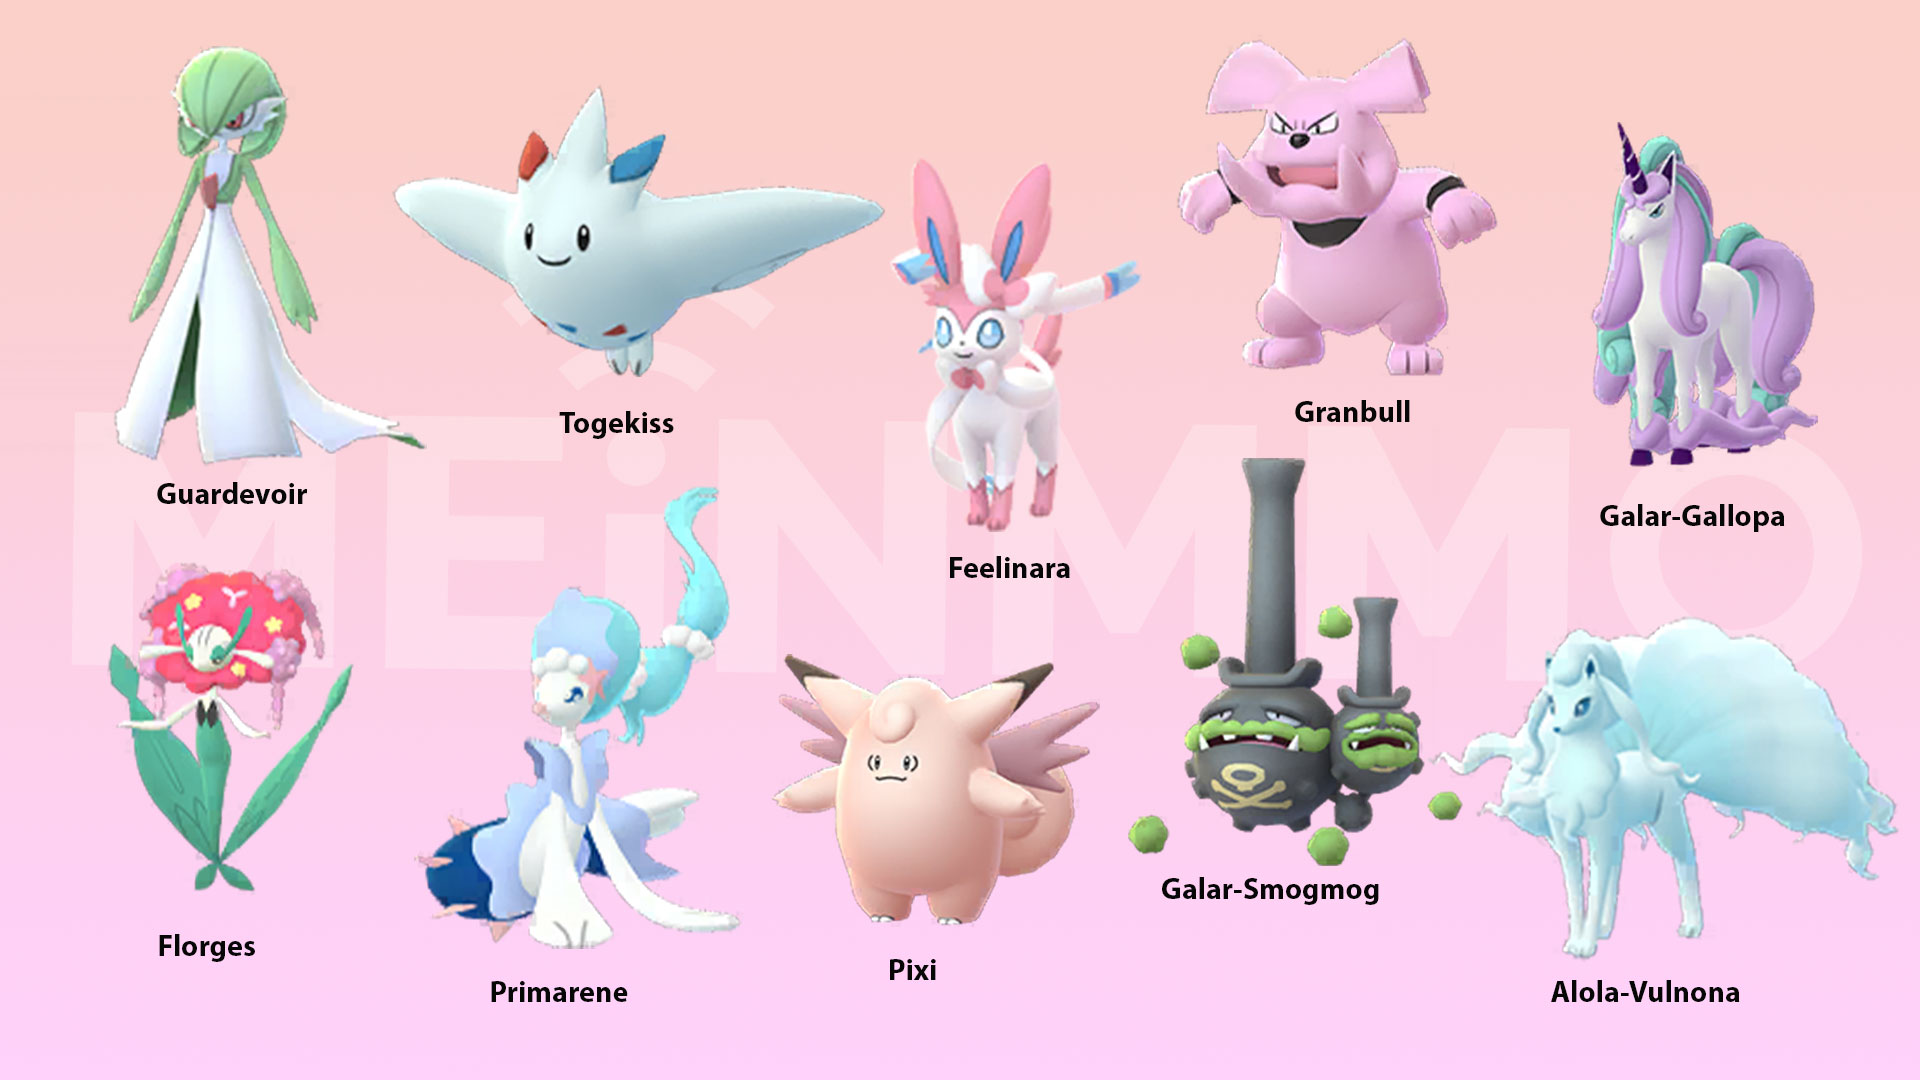 Pokémon GO: Zamazenta Konter - Das sind die besten Angreifer